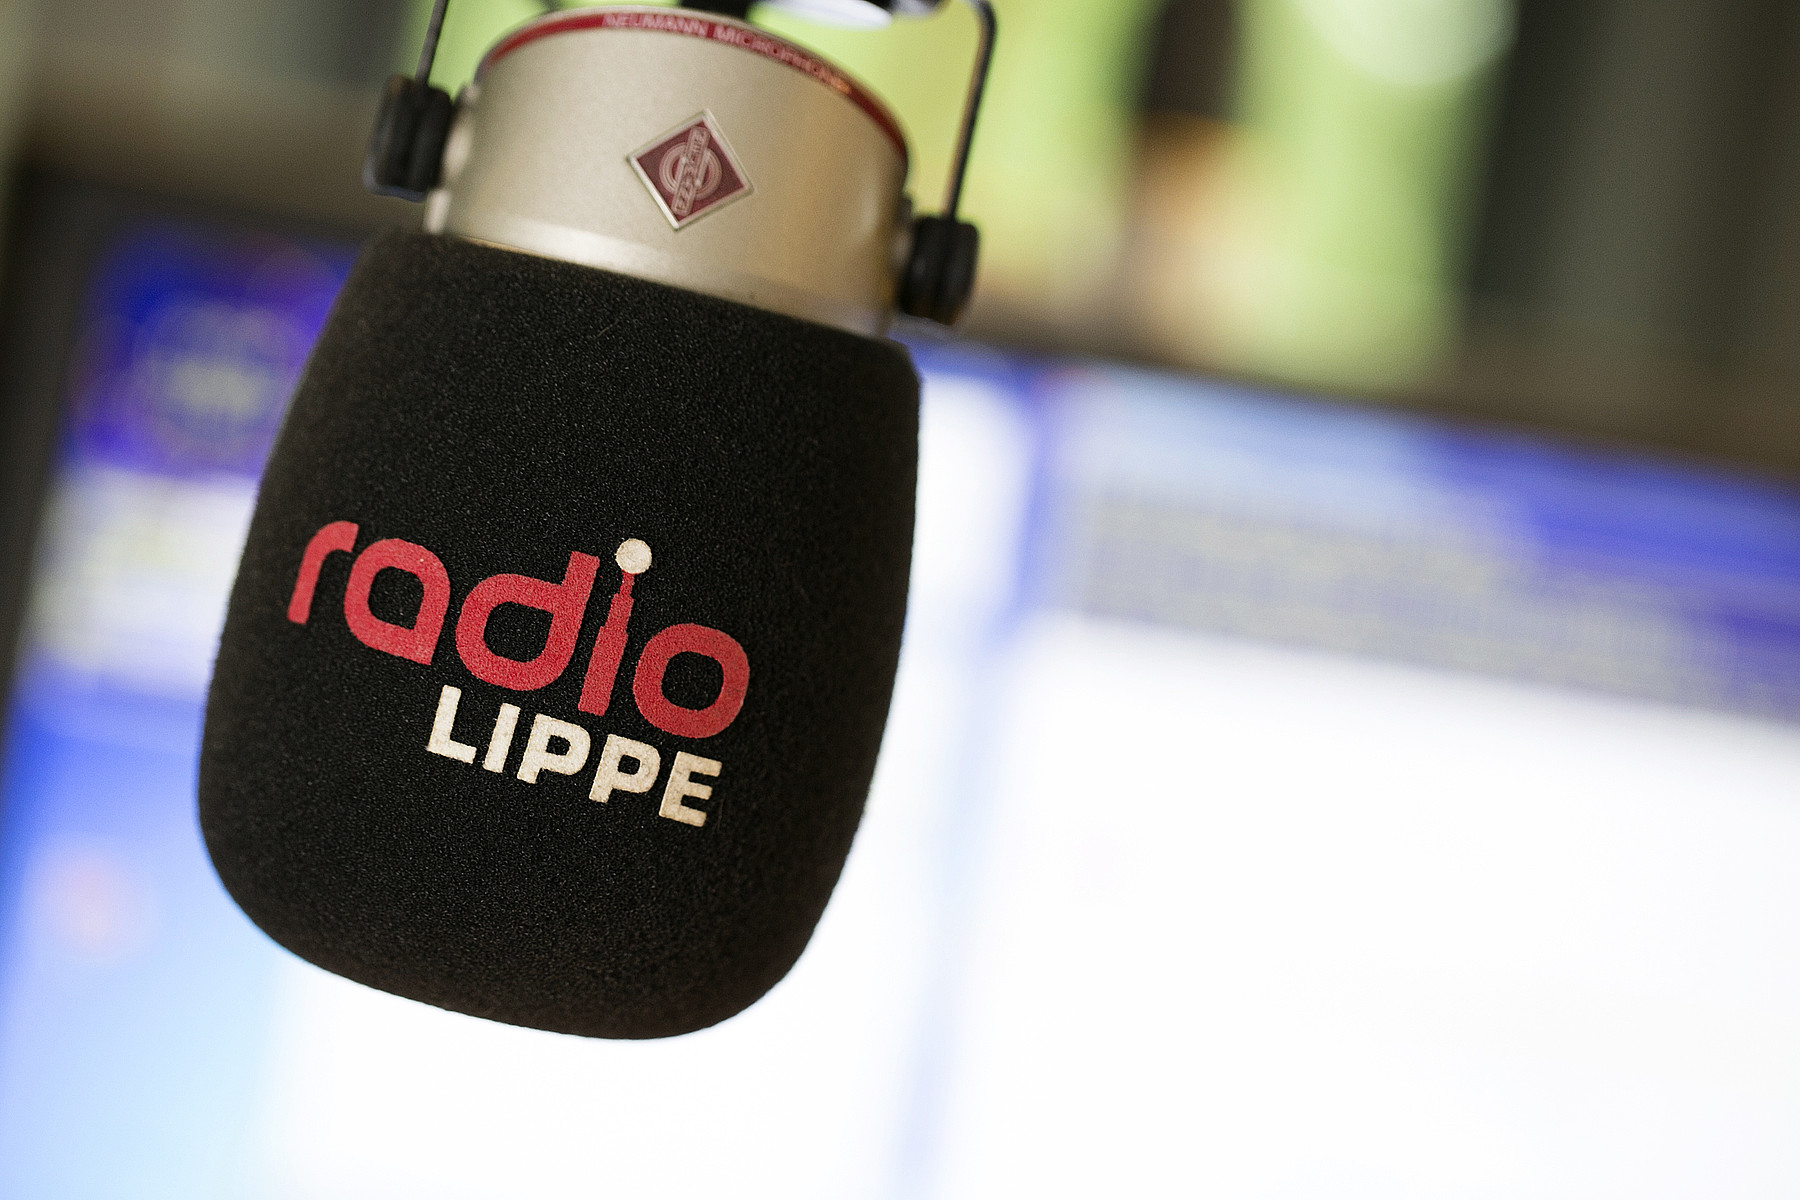 www.radiolippe.de